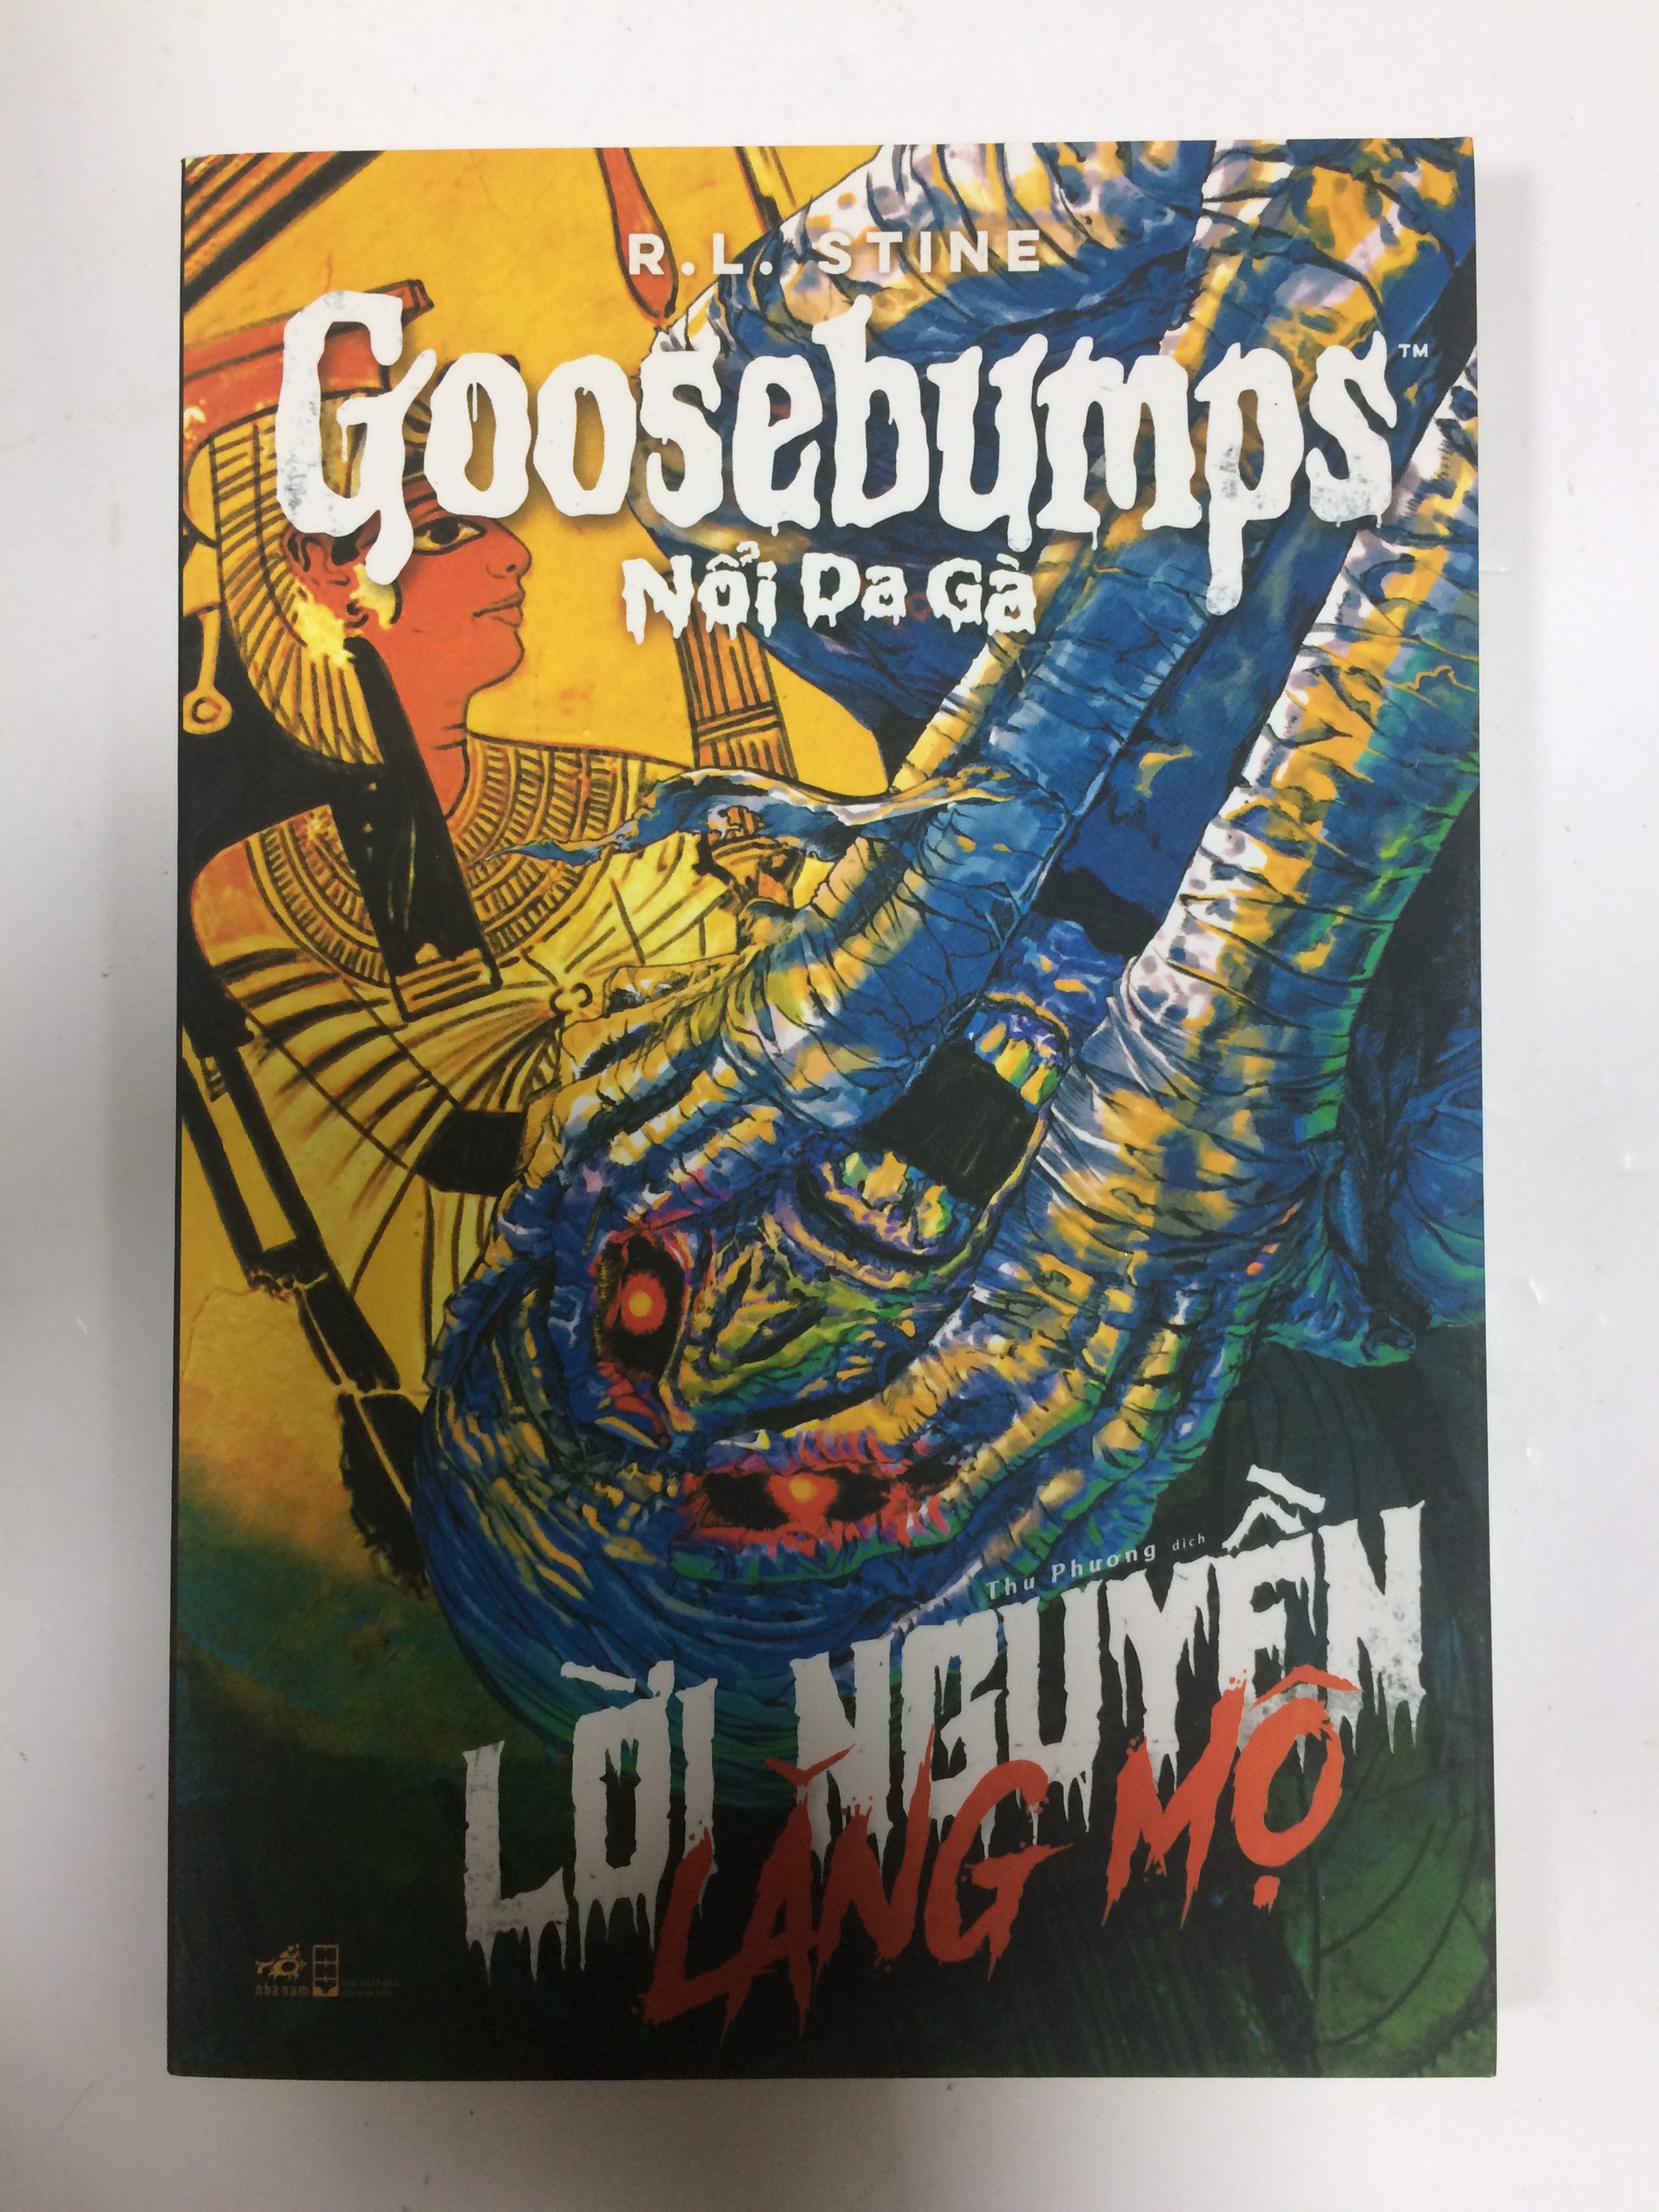 Trọn bộ 5 cuốn Goosebumps - Nổi da gà (Con rối sống dậy, Vùng đất kinh hoàng, Mặt nạ quỷ ám, Lời nguyền lăng mộ, Máu quái)